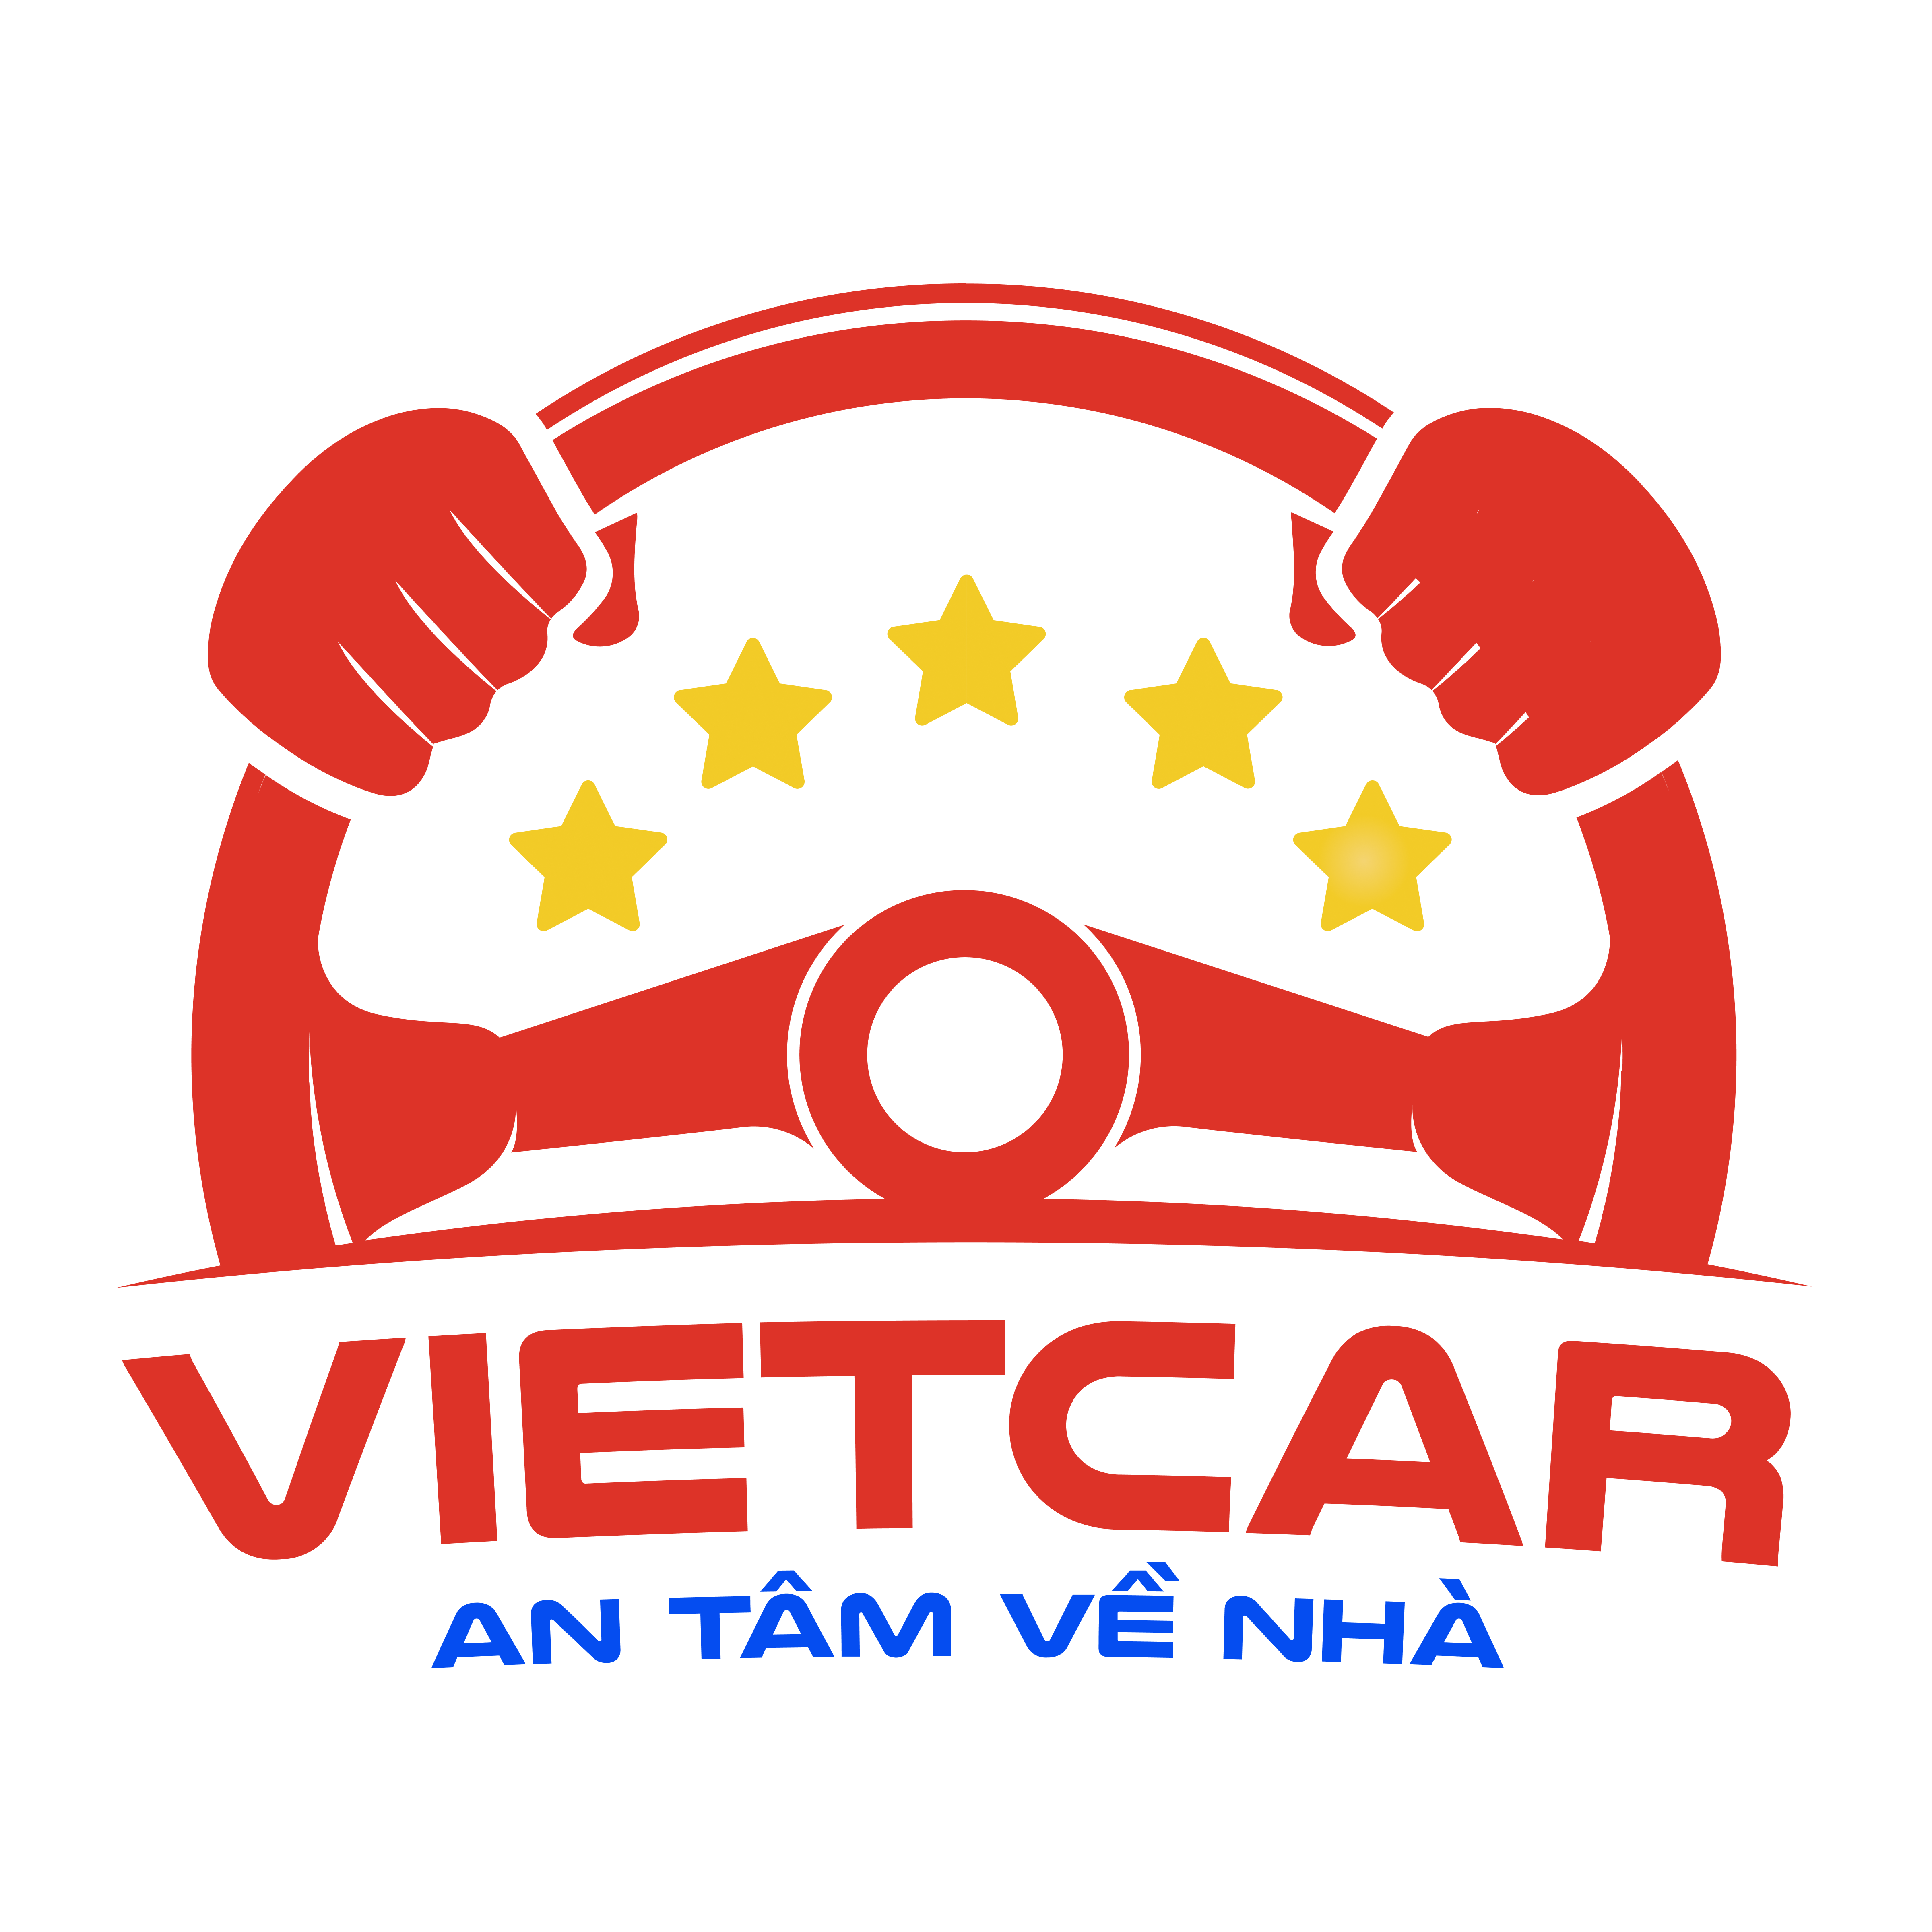 VietCar logo